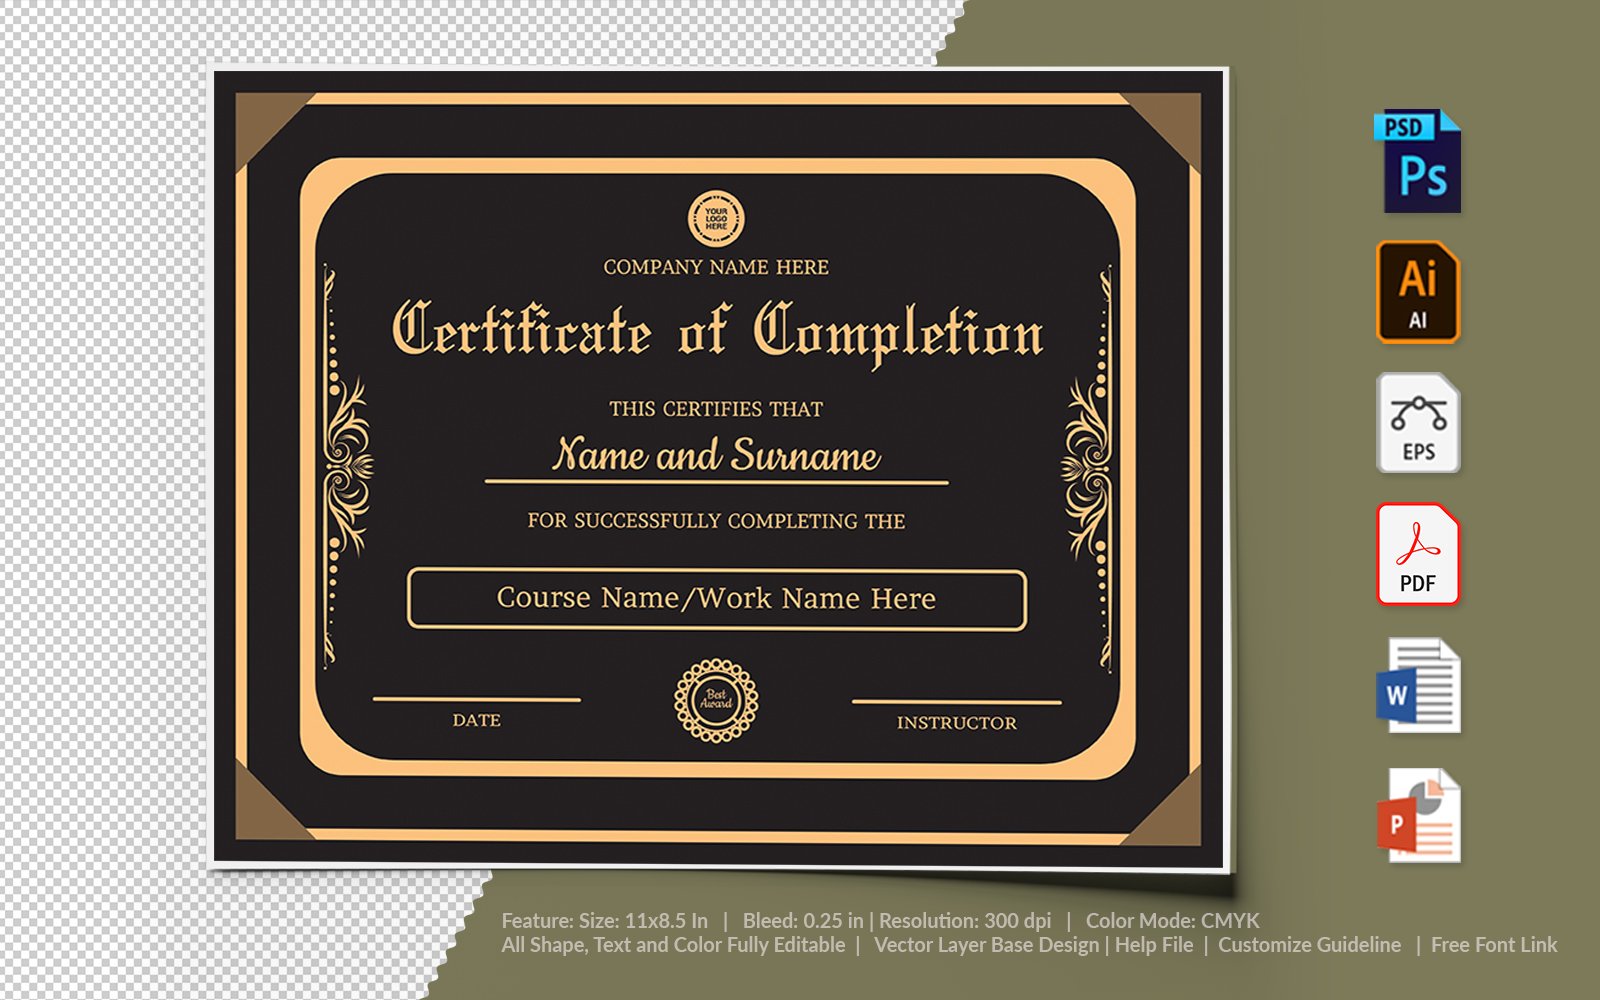 Kit Graphique #106246 Certificate Appreciation Divers Modles Web - Logo template Preview